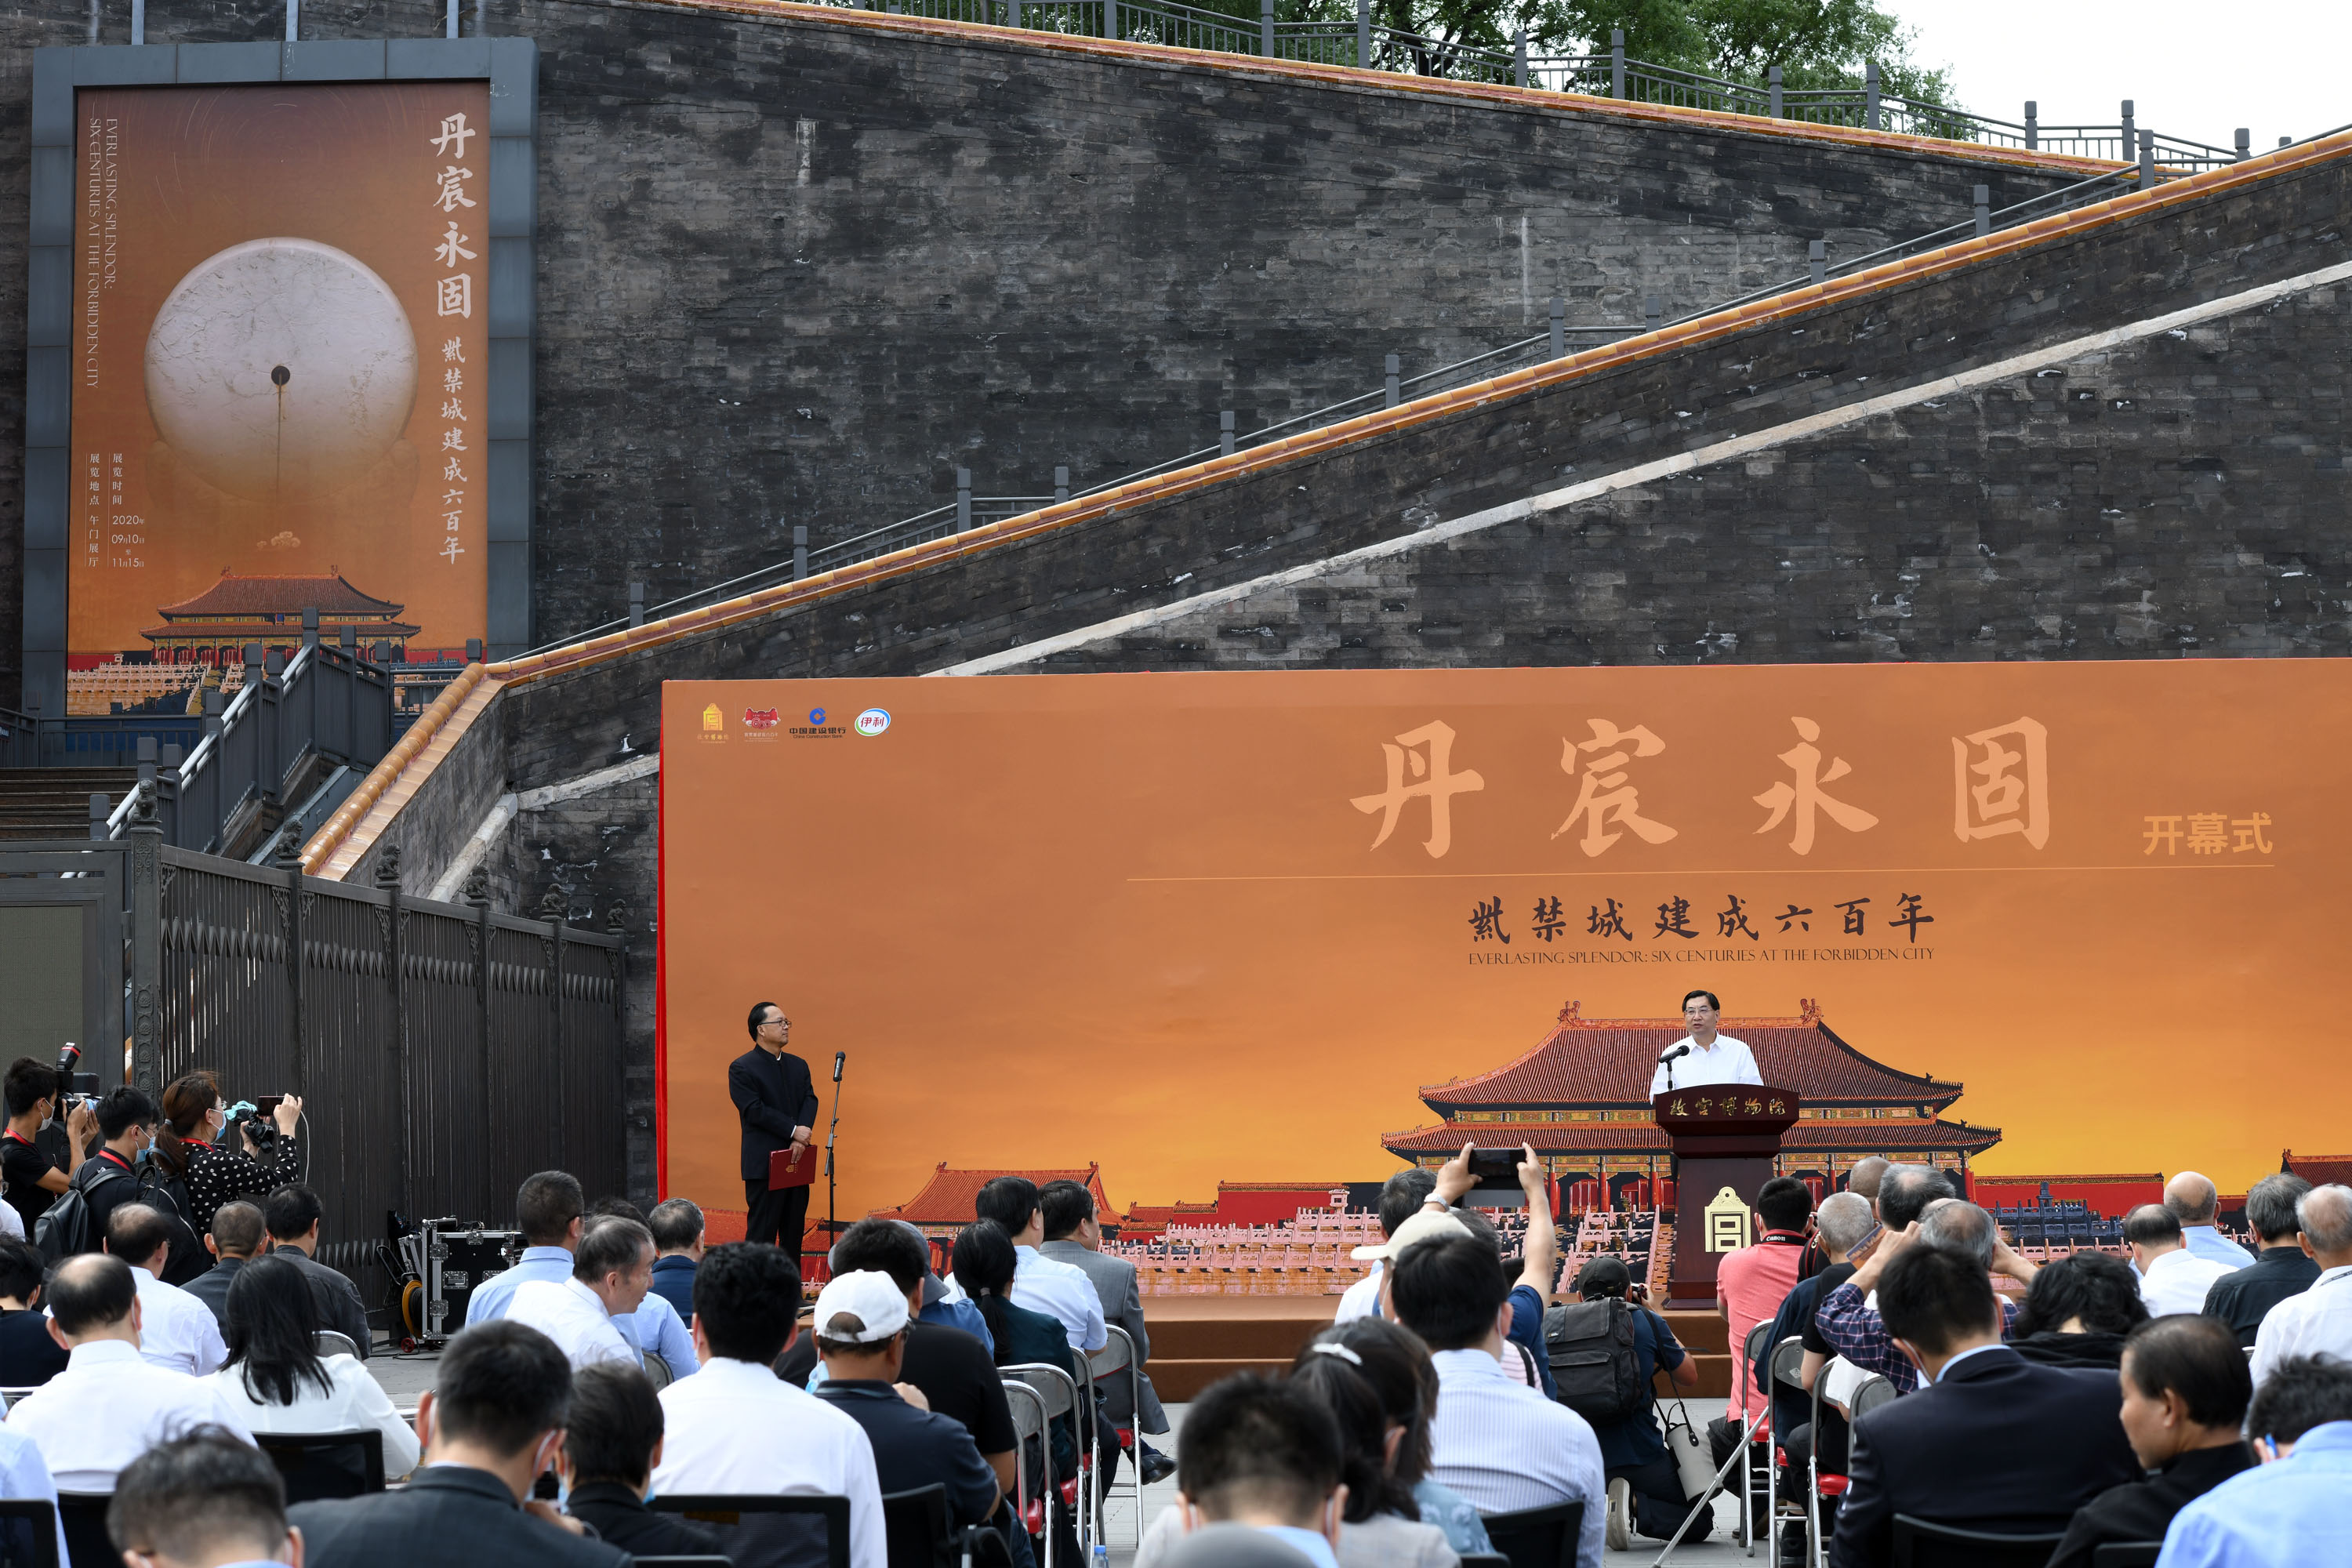 9月10日拍攝的「丹宸永固——紫禁城建成六百年」展覽開幕式現場。 新華社